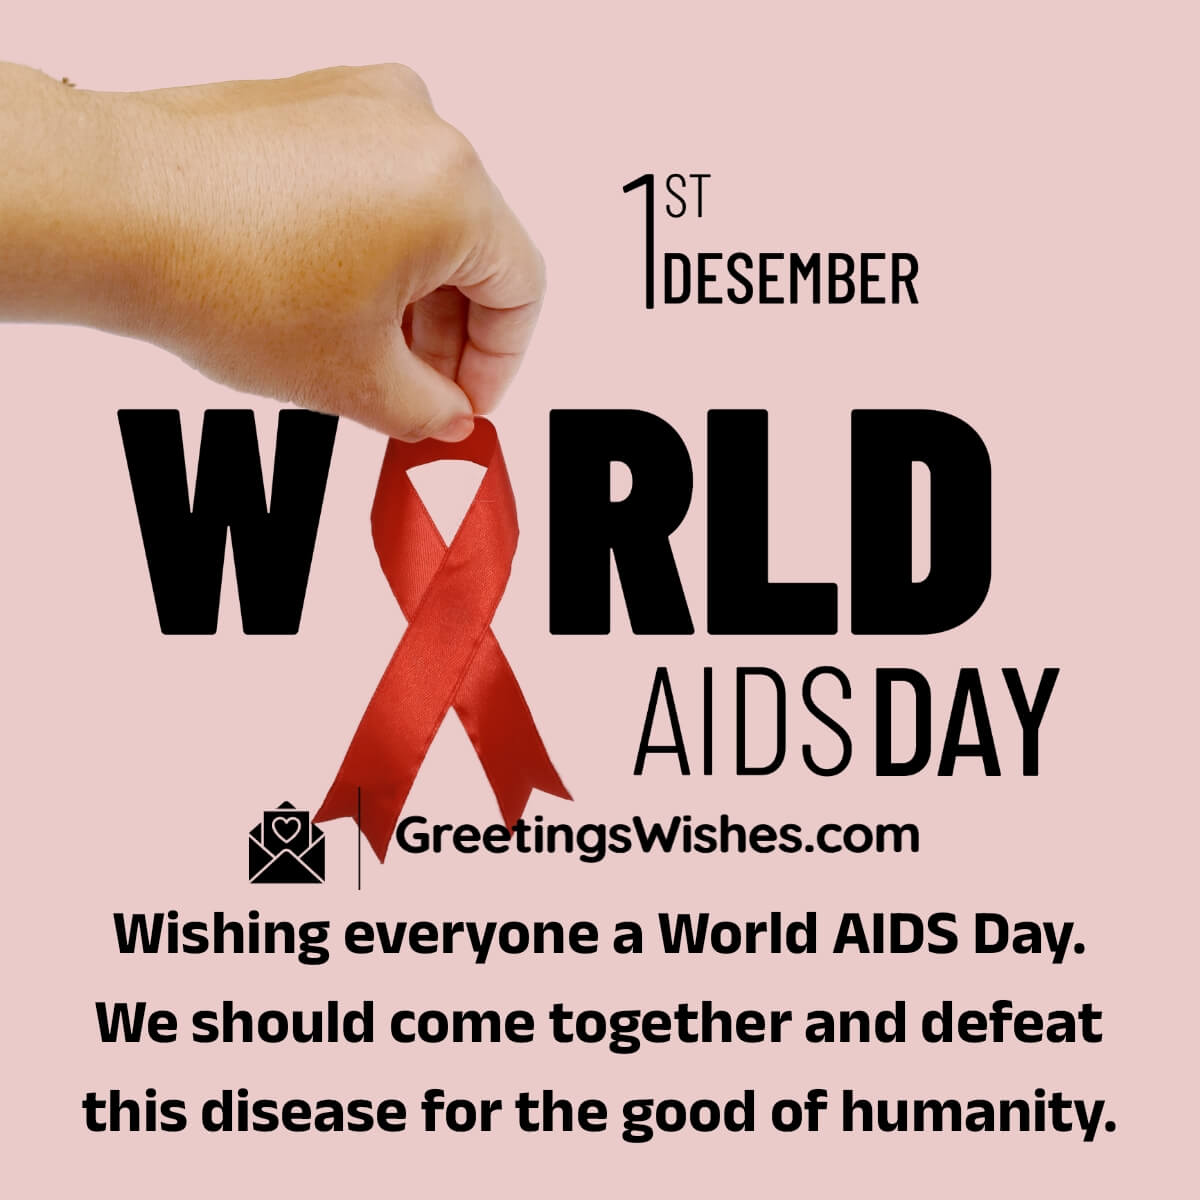 World AIDS Day Awareness messages (1st December)